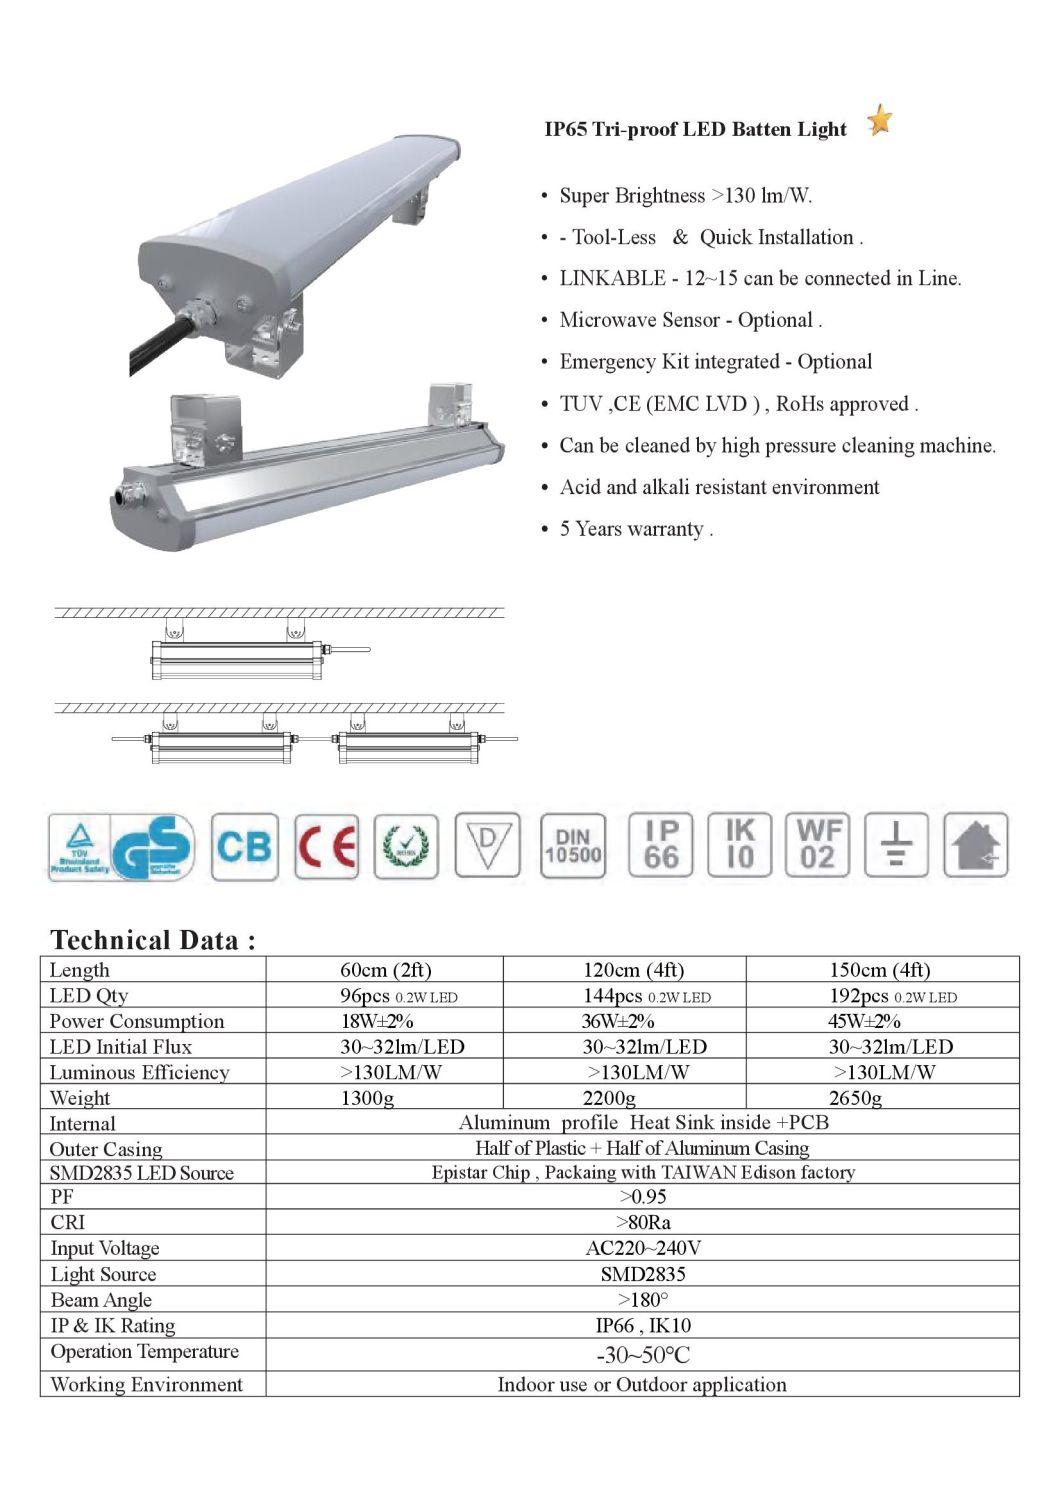 H110-600 2FT Industrial Linear LED Strip Lights 30W AC85-265V 4000K 5000K